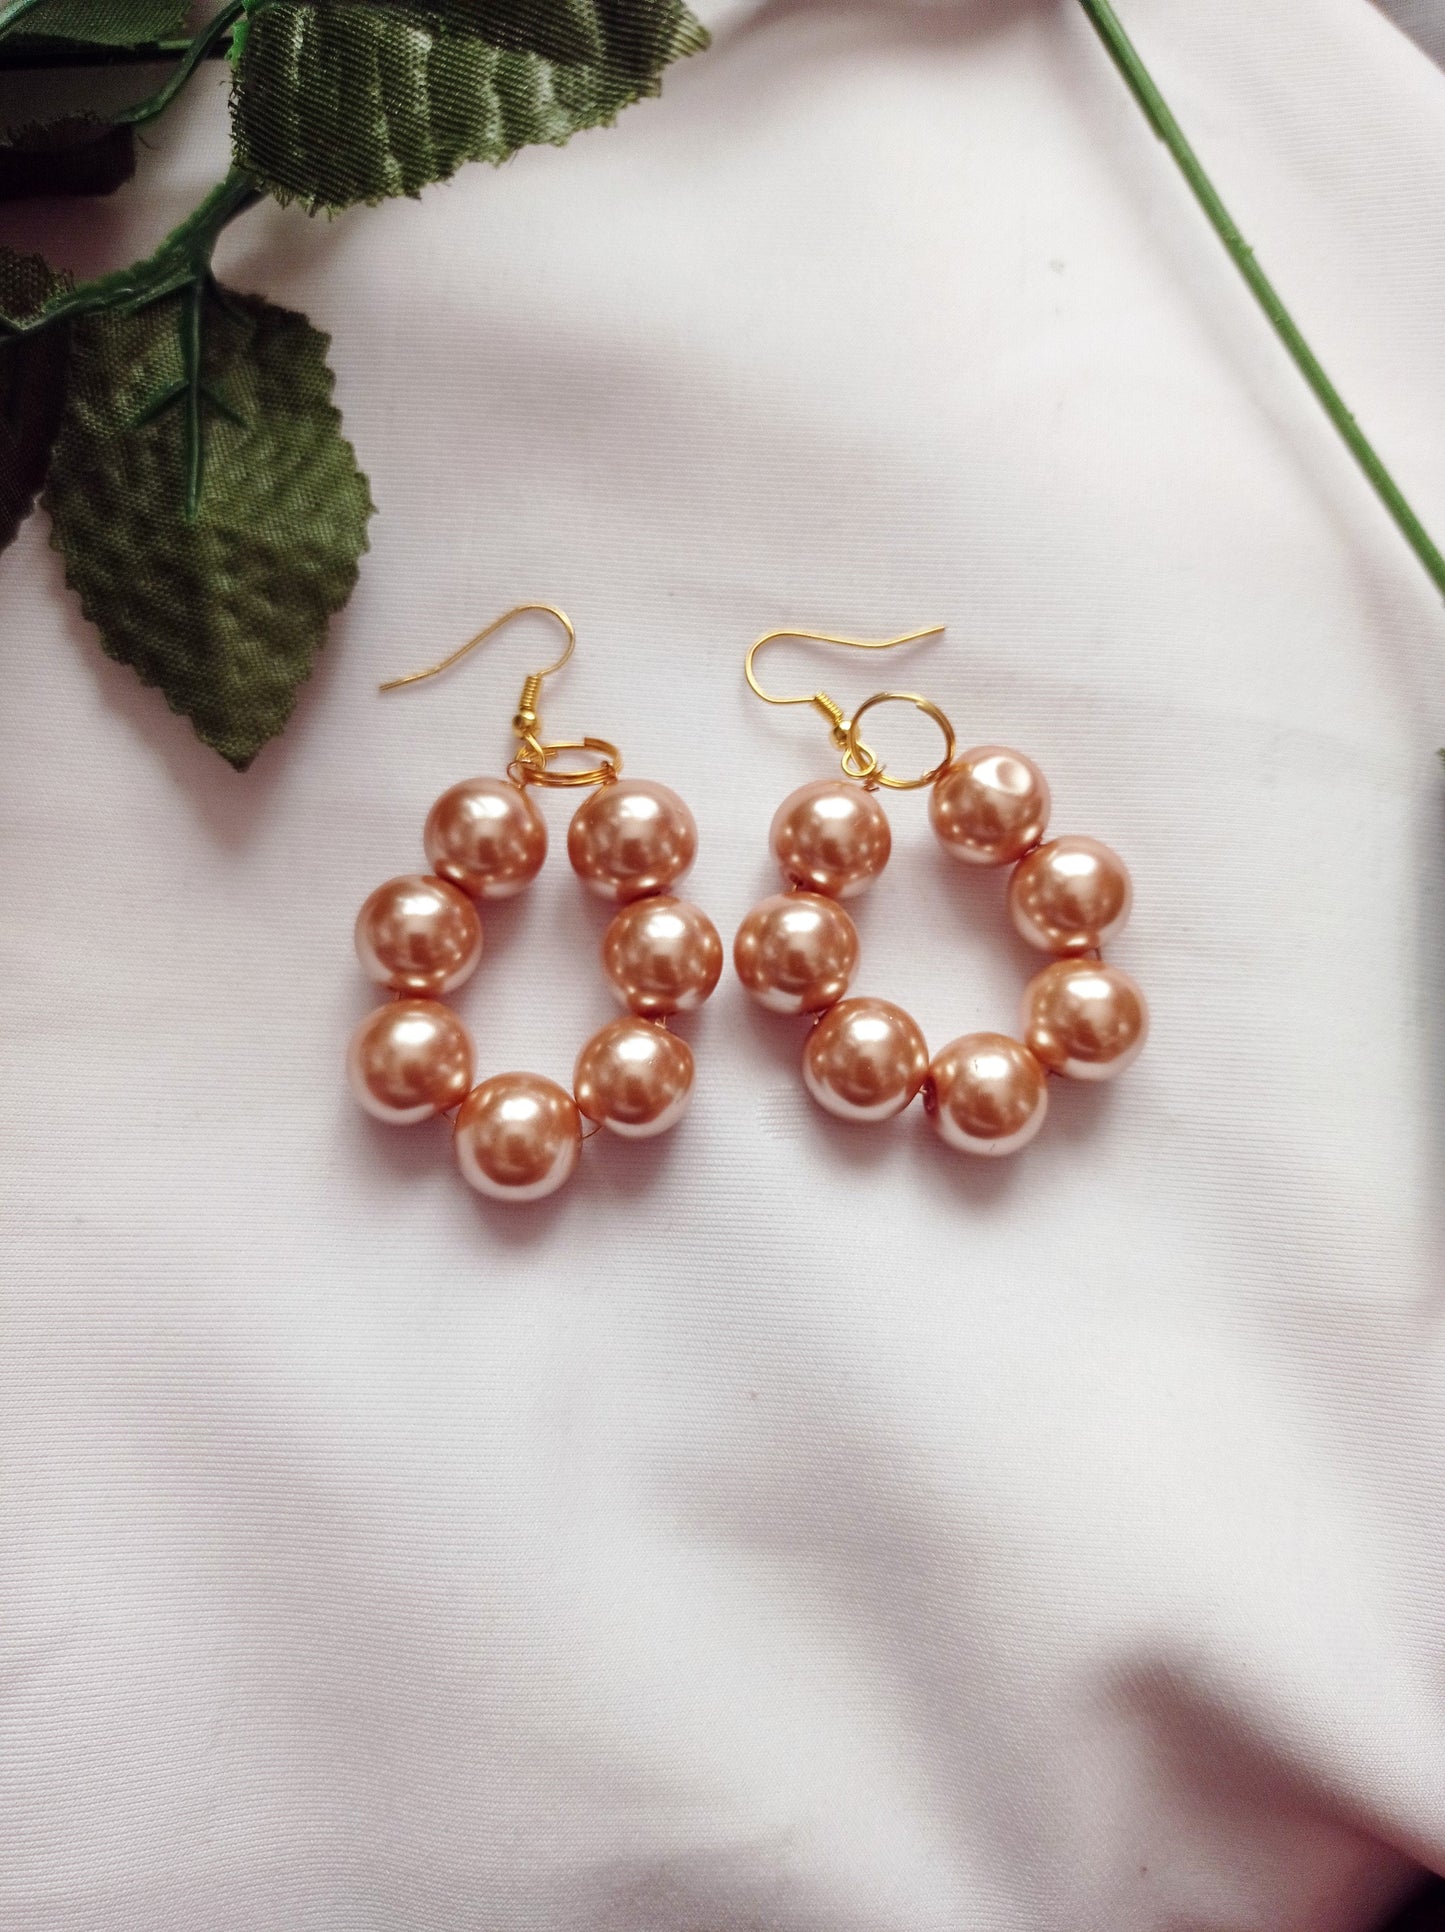 Bronze Glass Pearl Earrings, Glass Pearl Jewelry, Unique Earrings | by lovedbynlanla-2